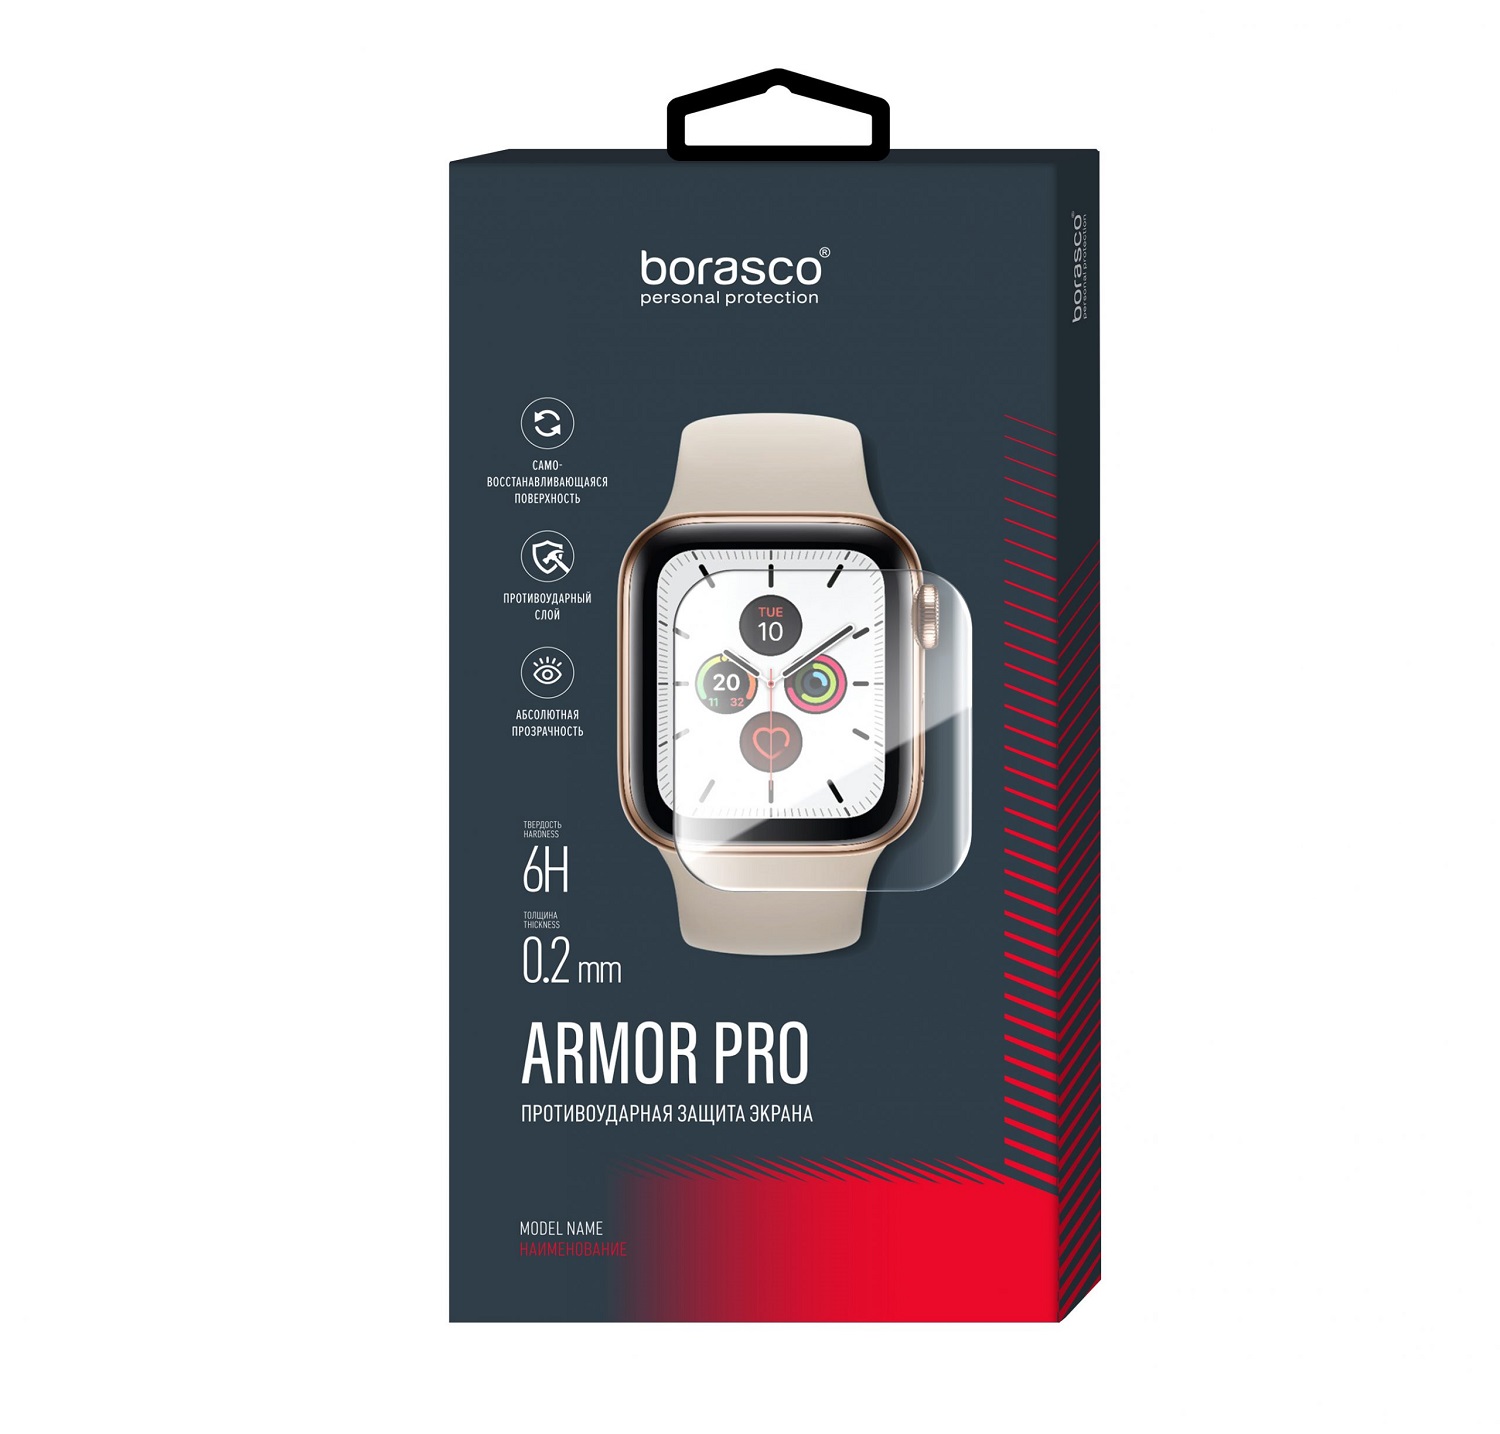 Защита экрана BoraSCO Armor Pro для Huawei Watch GT 2 защита экрана borasco armor pro для huawei p30 pro